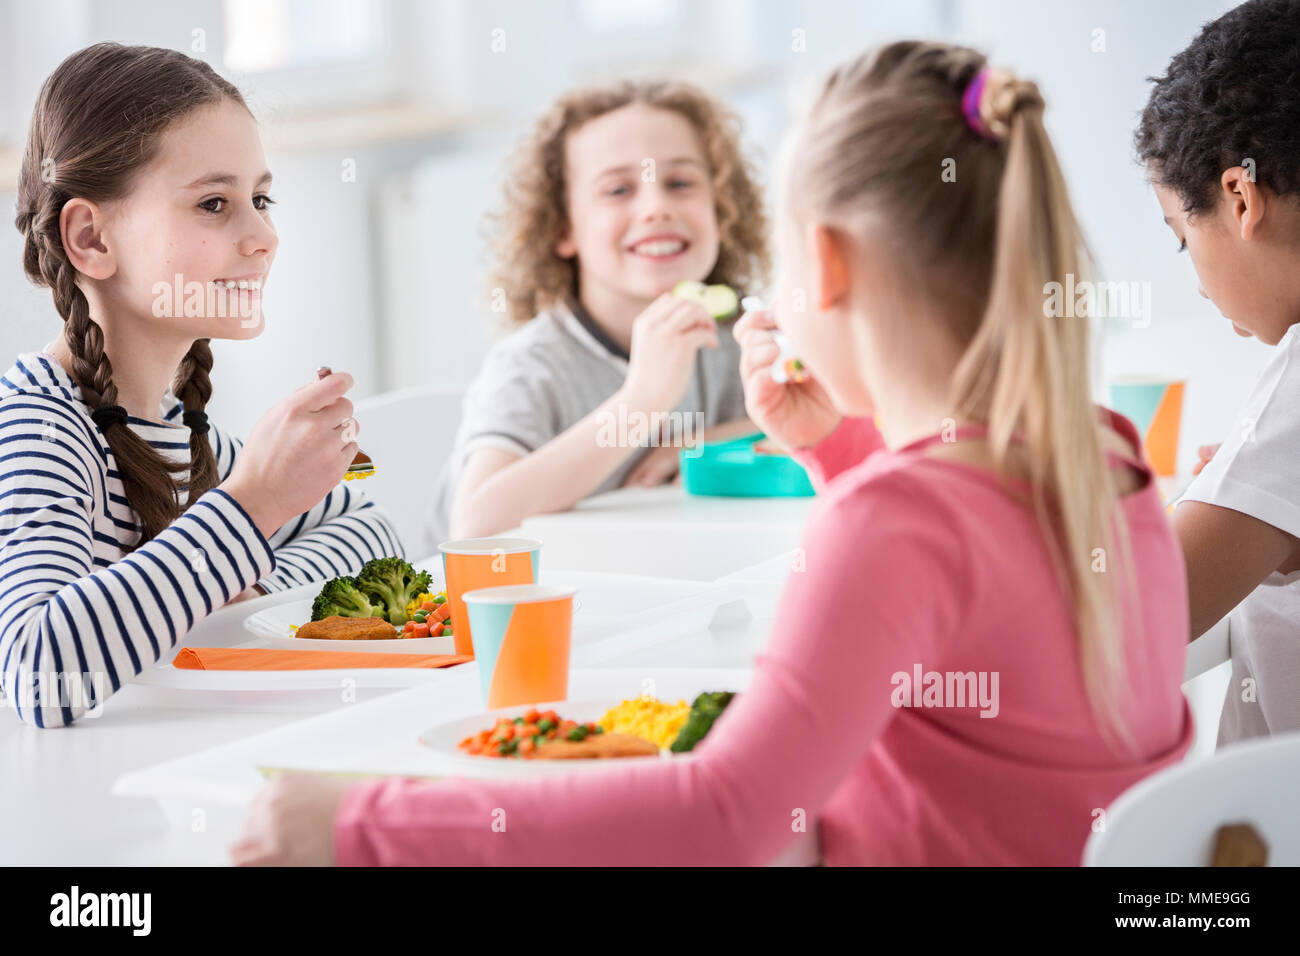 Ragazza sorridente di mangiare le verdure durante la pausa pranzo con gli amici a scuola Foto Stock